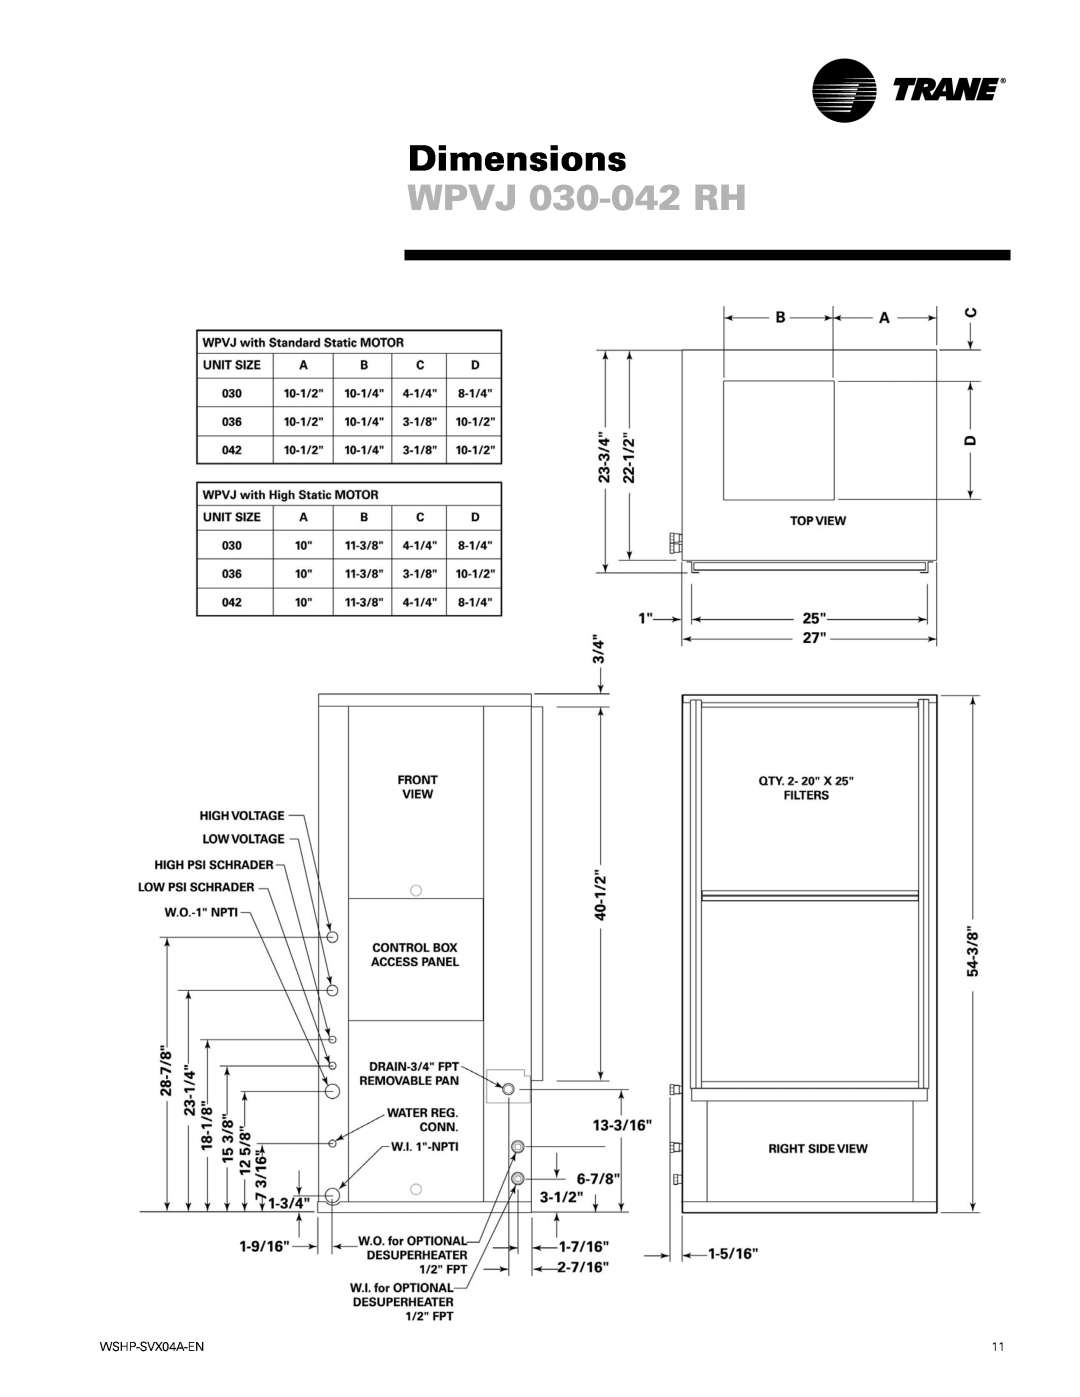 Trane WPHF manual WPVJ 030-042RH, Dimensions, WSHP-SVX04A-EN 